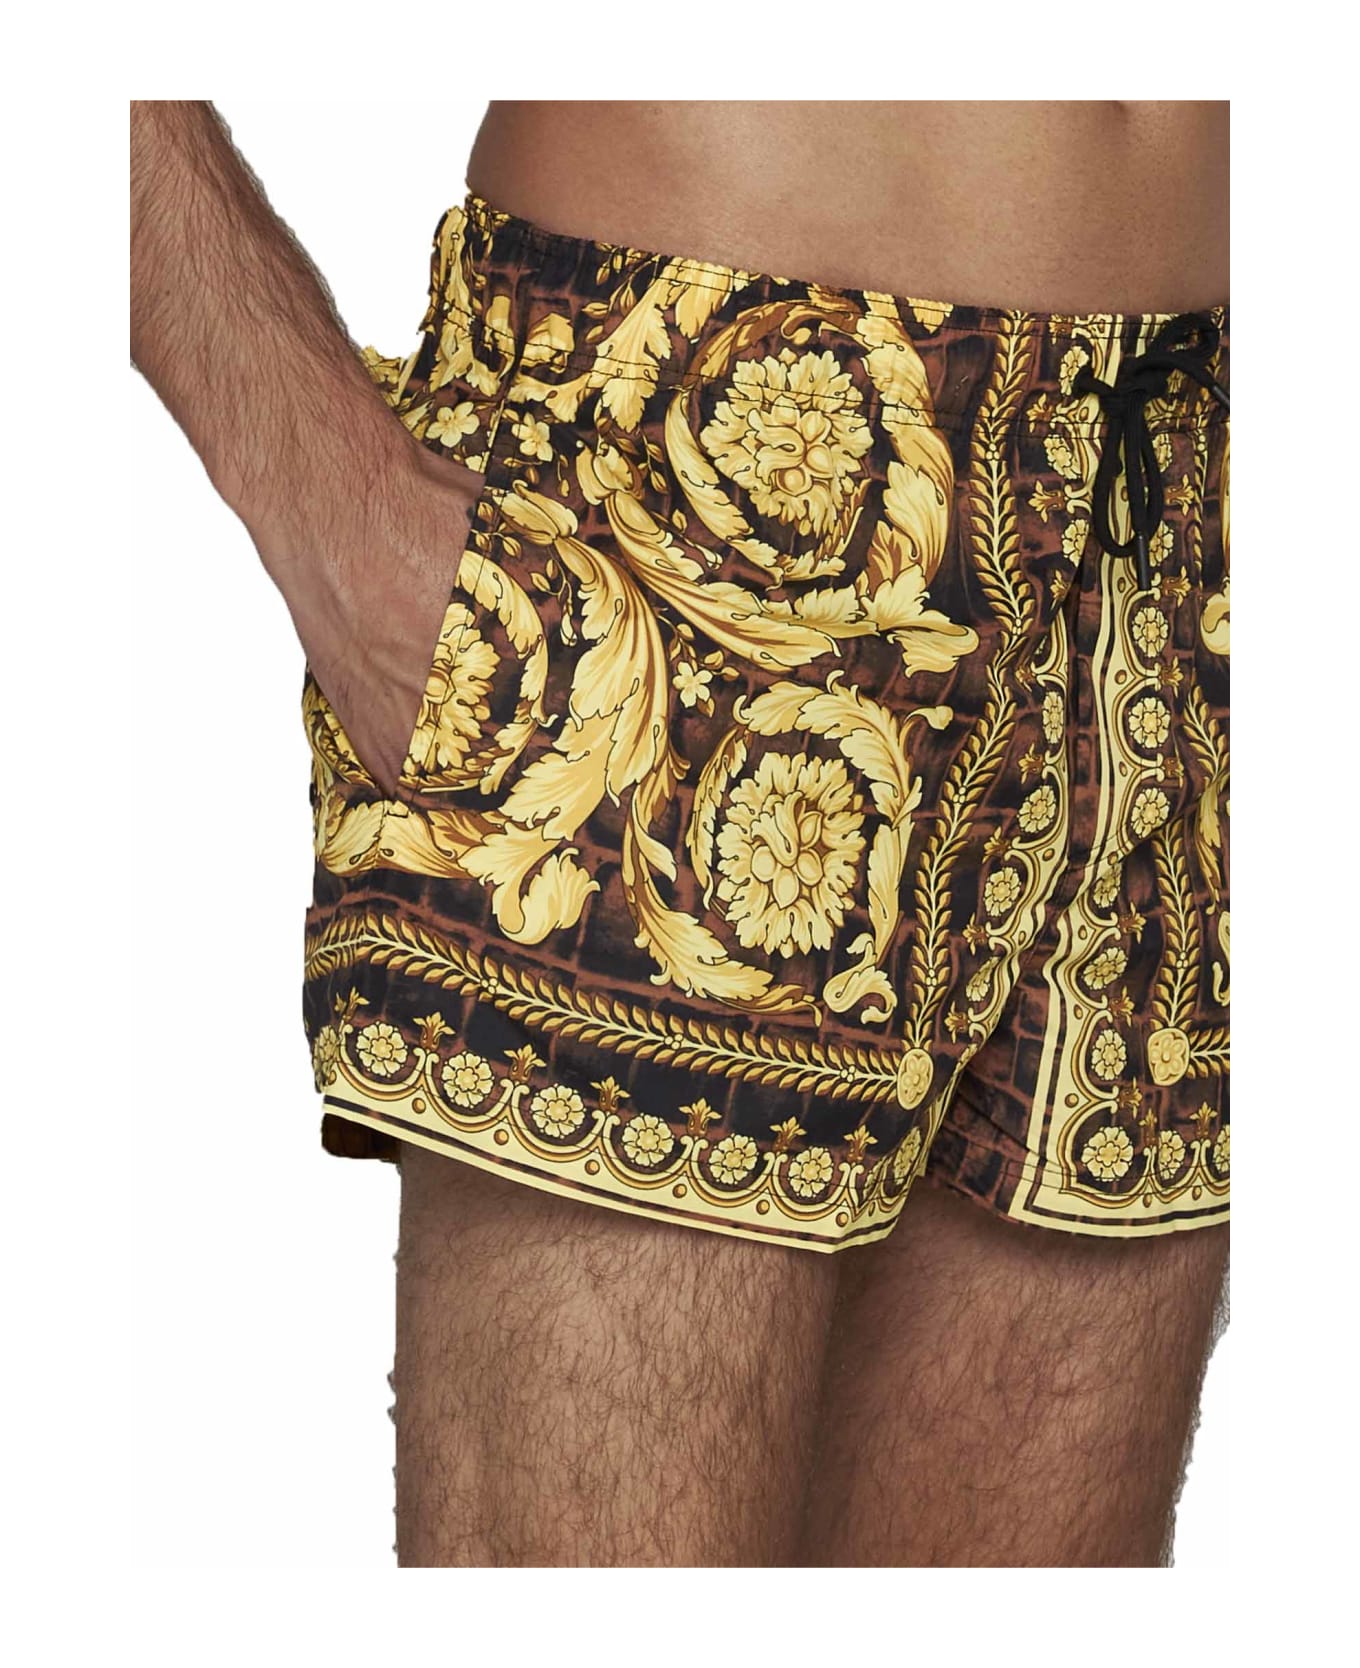 Versace Shorts Baroccodile - Caramel Black Gold